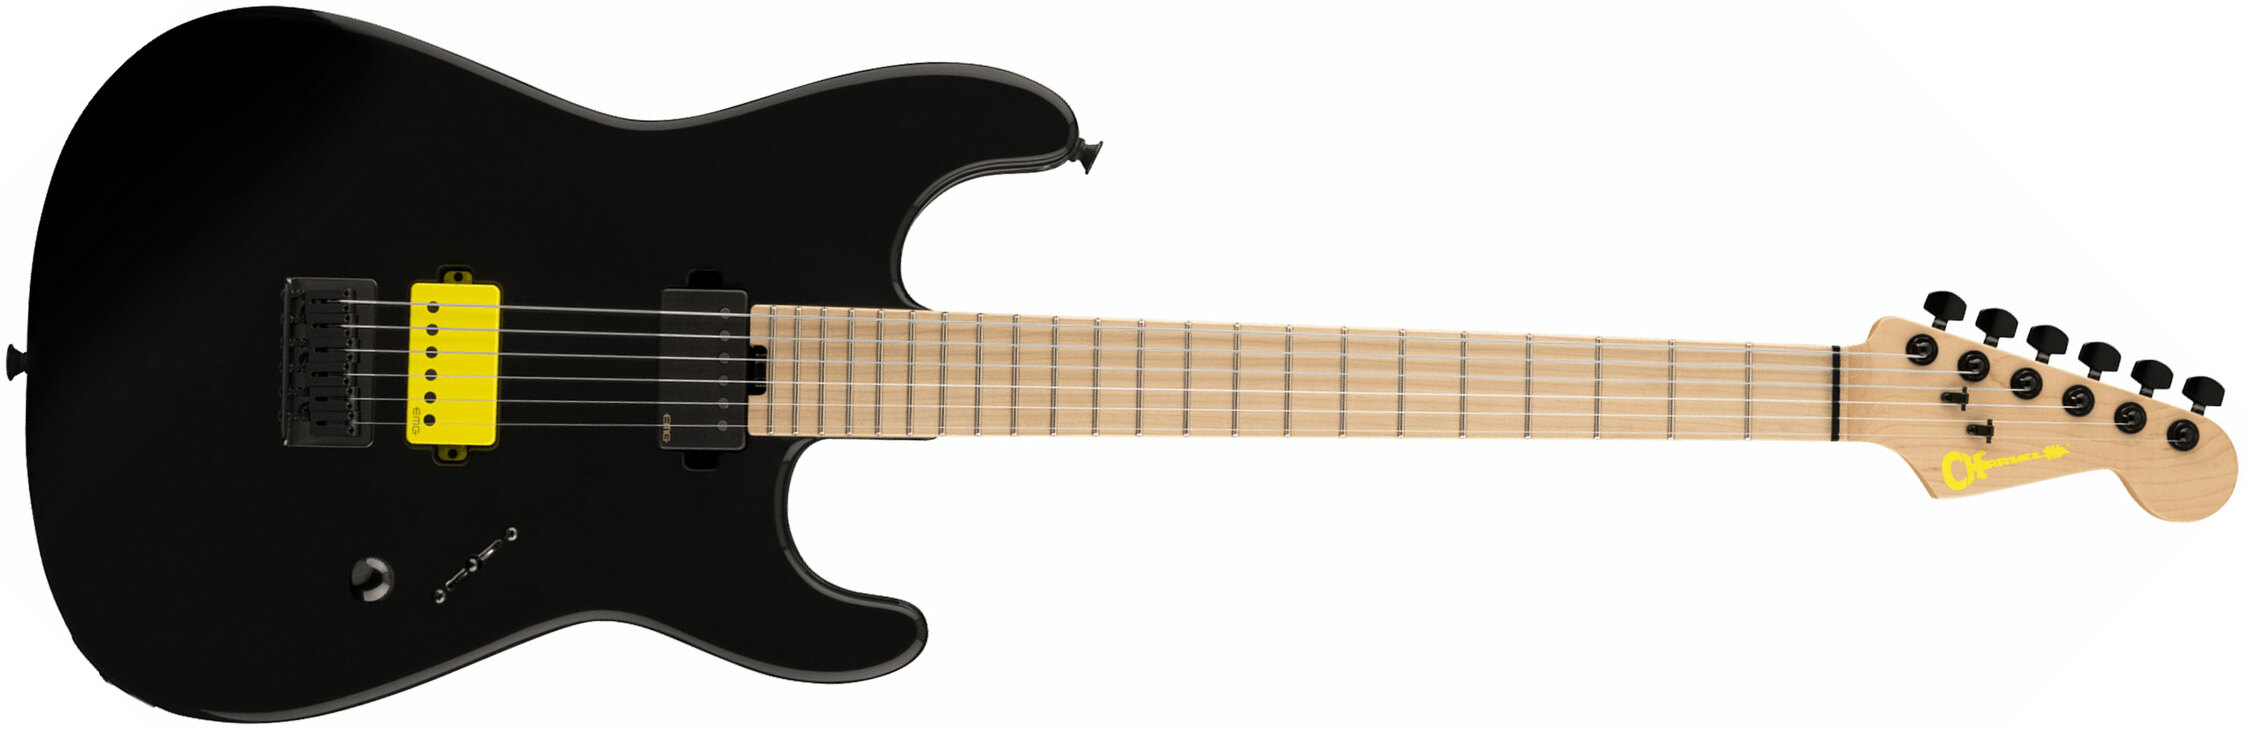 Charvel Sean Long San Dimas Style 1 Pro-mod Signature 2h Emg Ht Mn - Gloss Black - Guitare Électrique Forme Str - Main picture